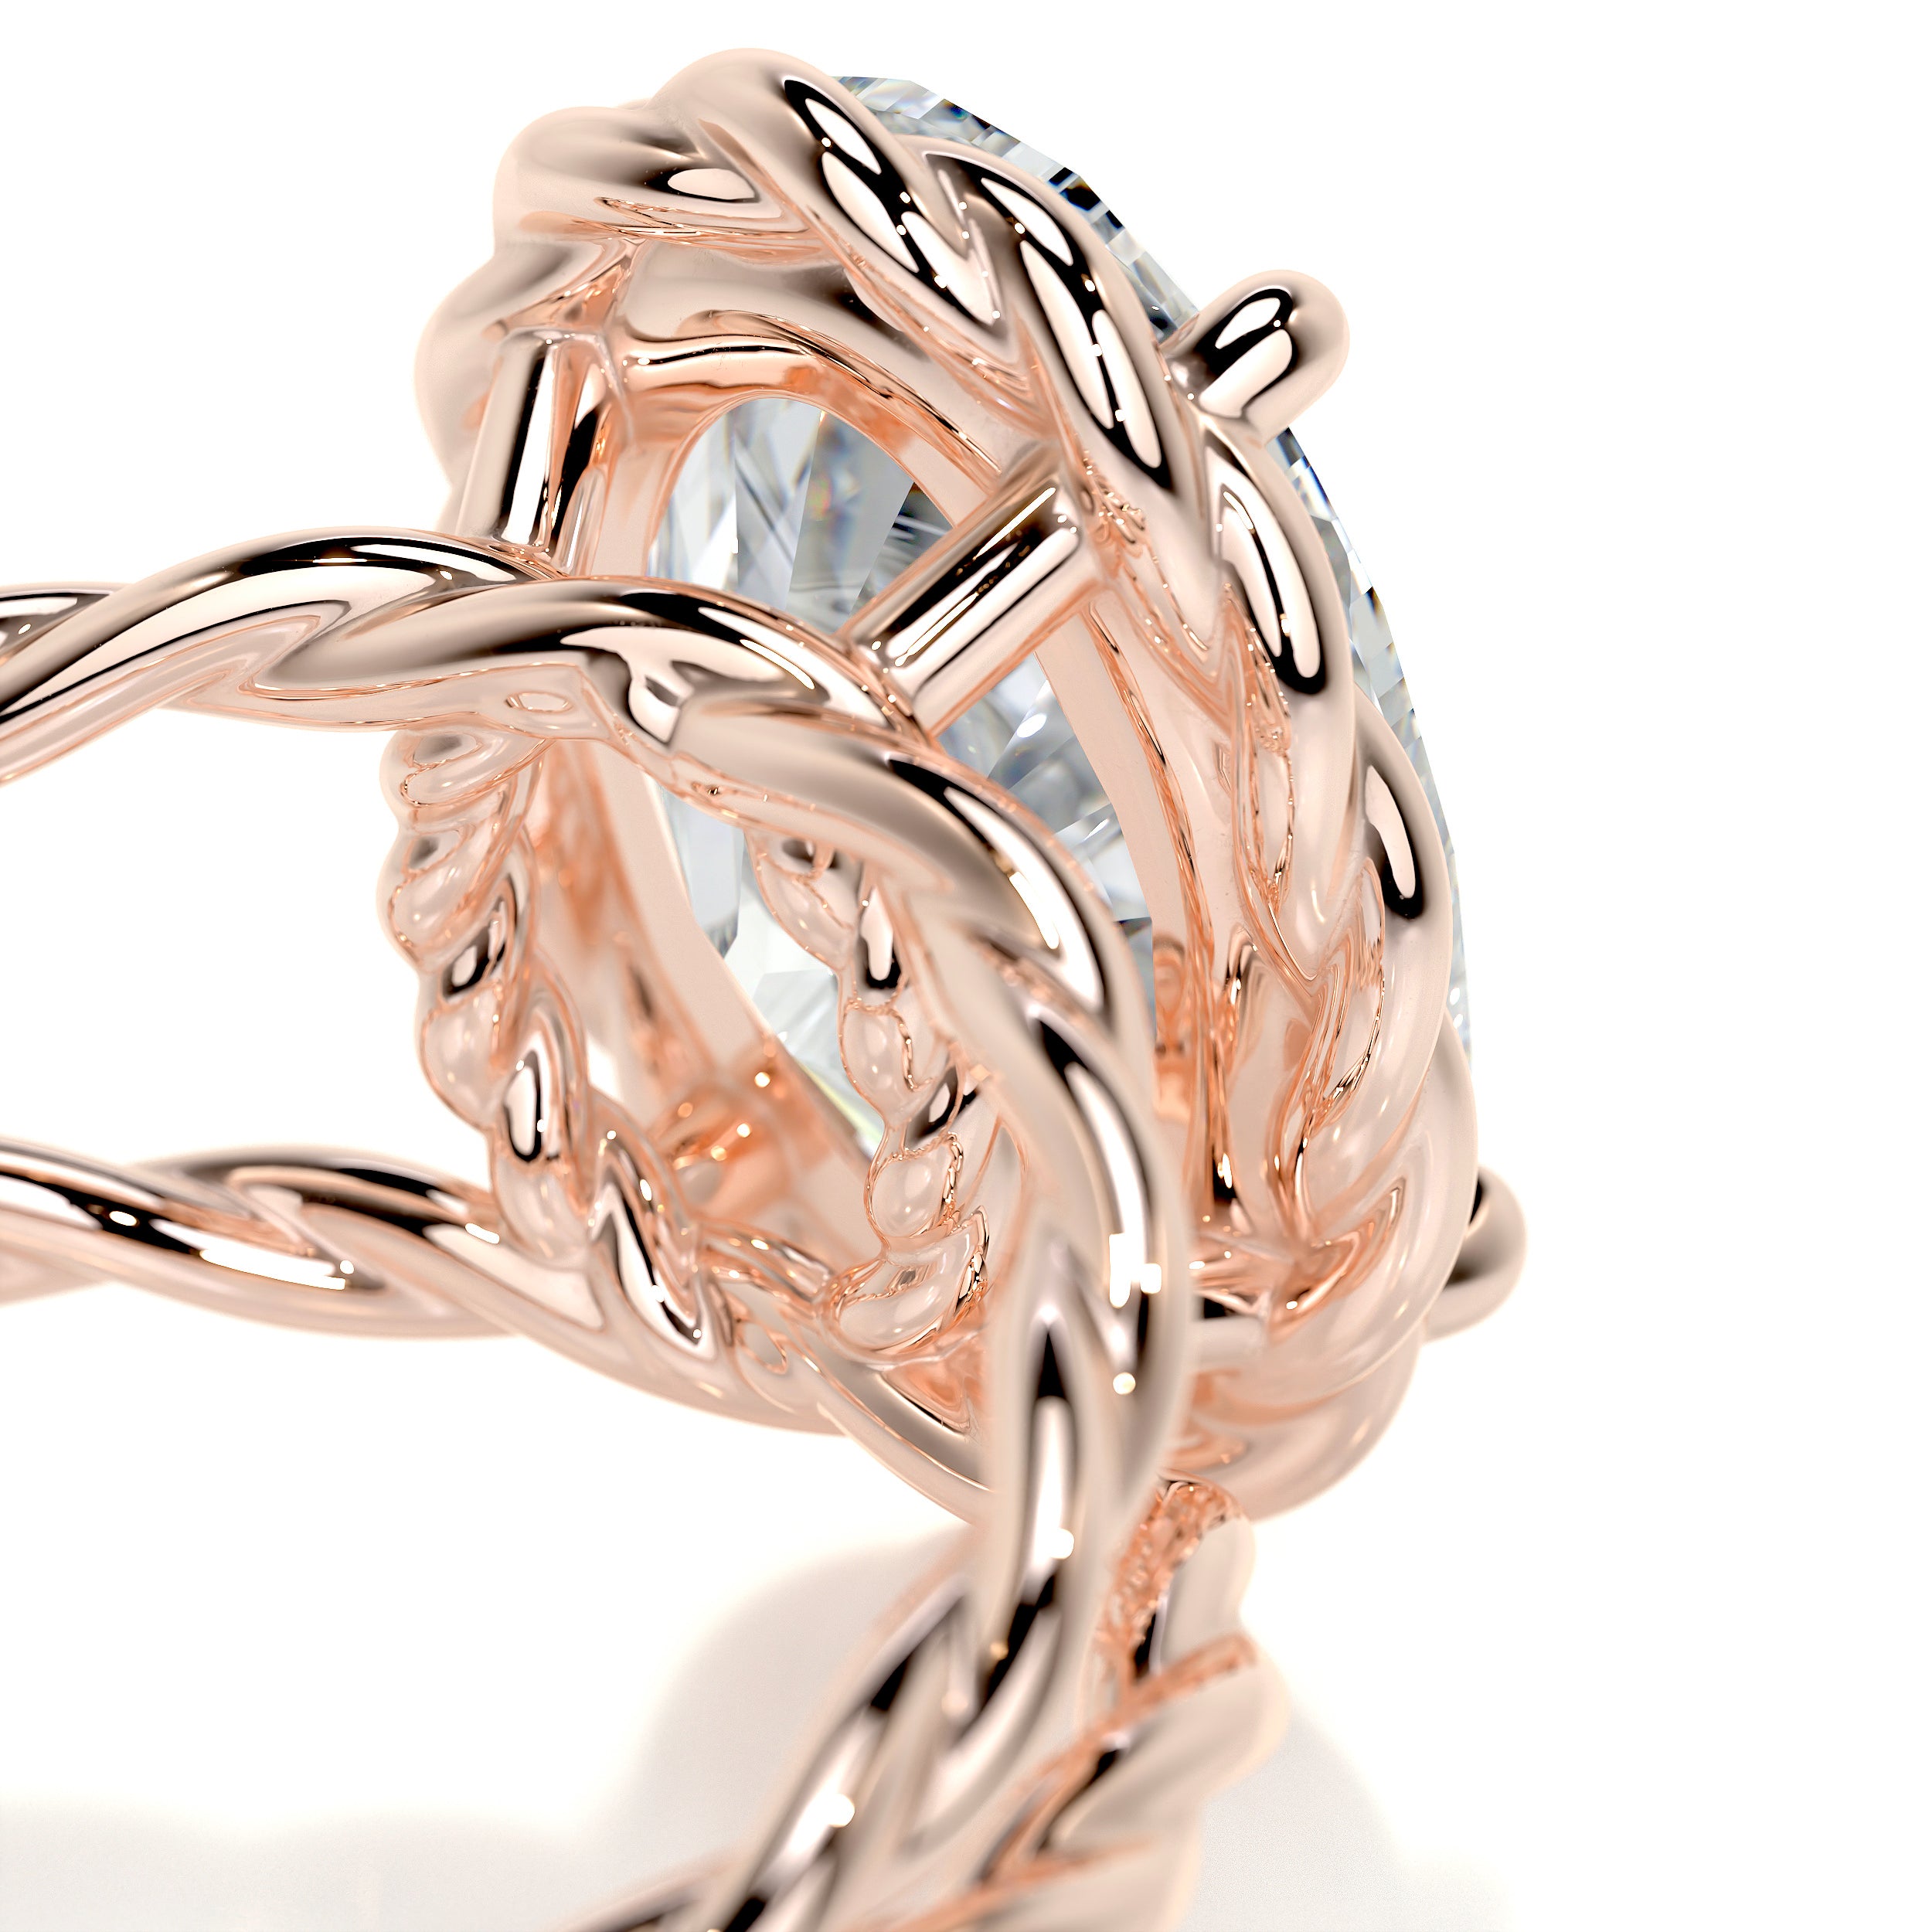 Milani Diamond Engagement Ring   (3 Carat) -14K Rose Gold